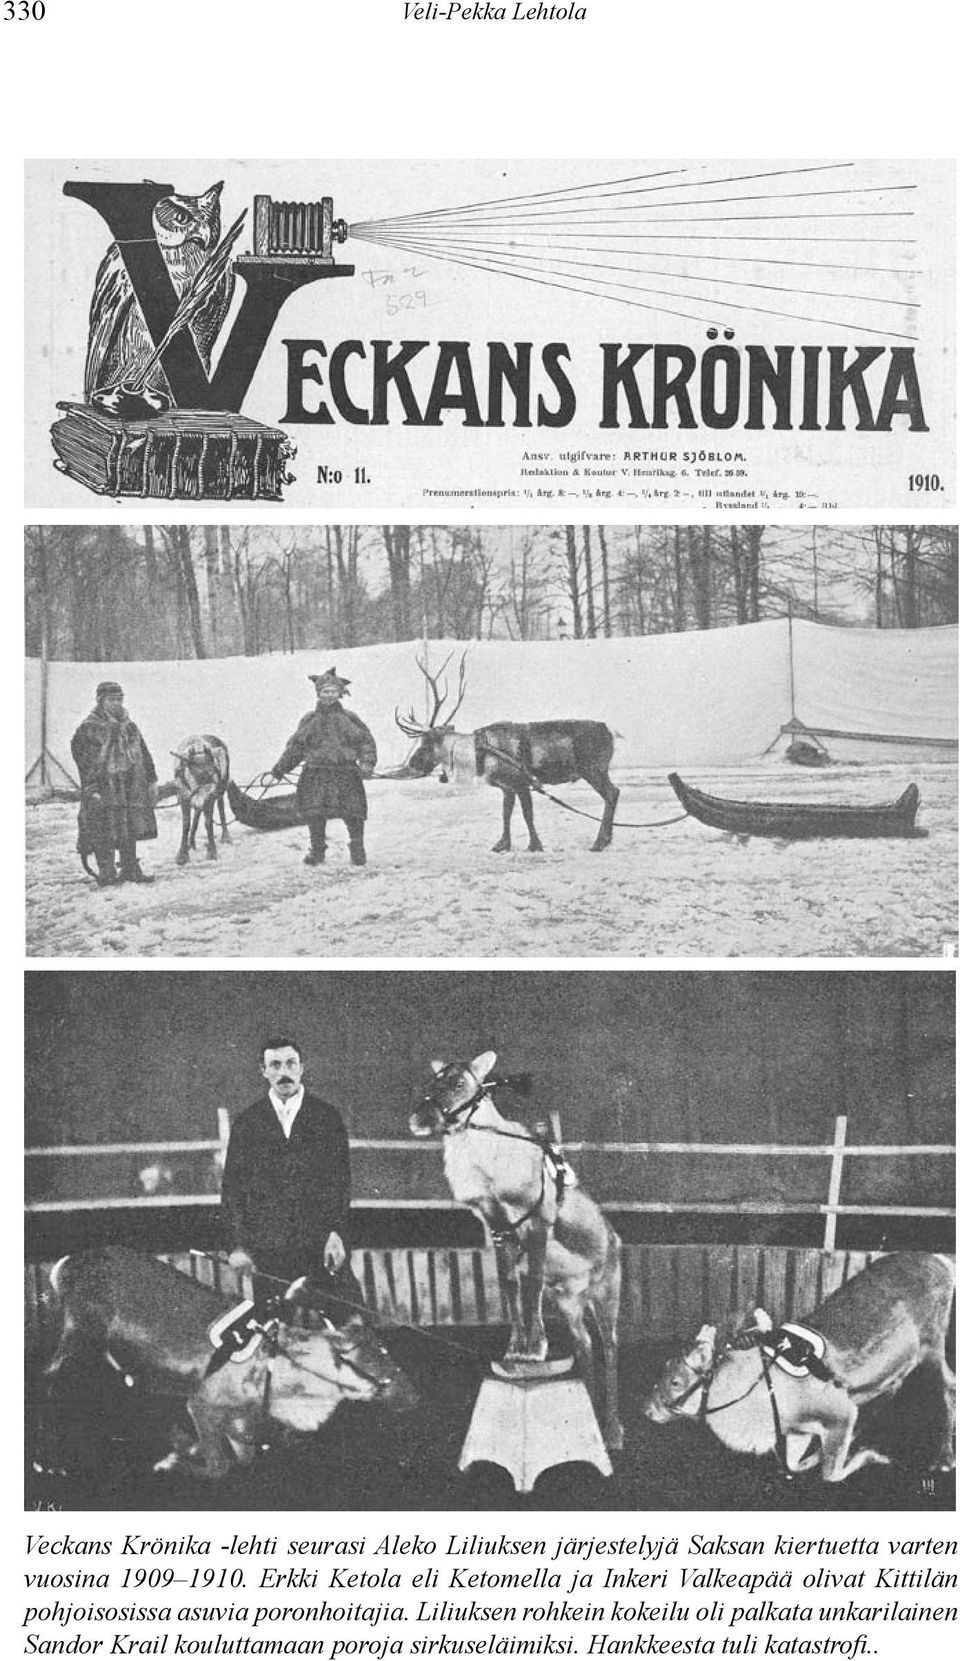 Erkki Ketola eli Ketomella ja Inkeri Valkeapää olivat Kittilän pohjoisosissa asuvia